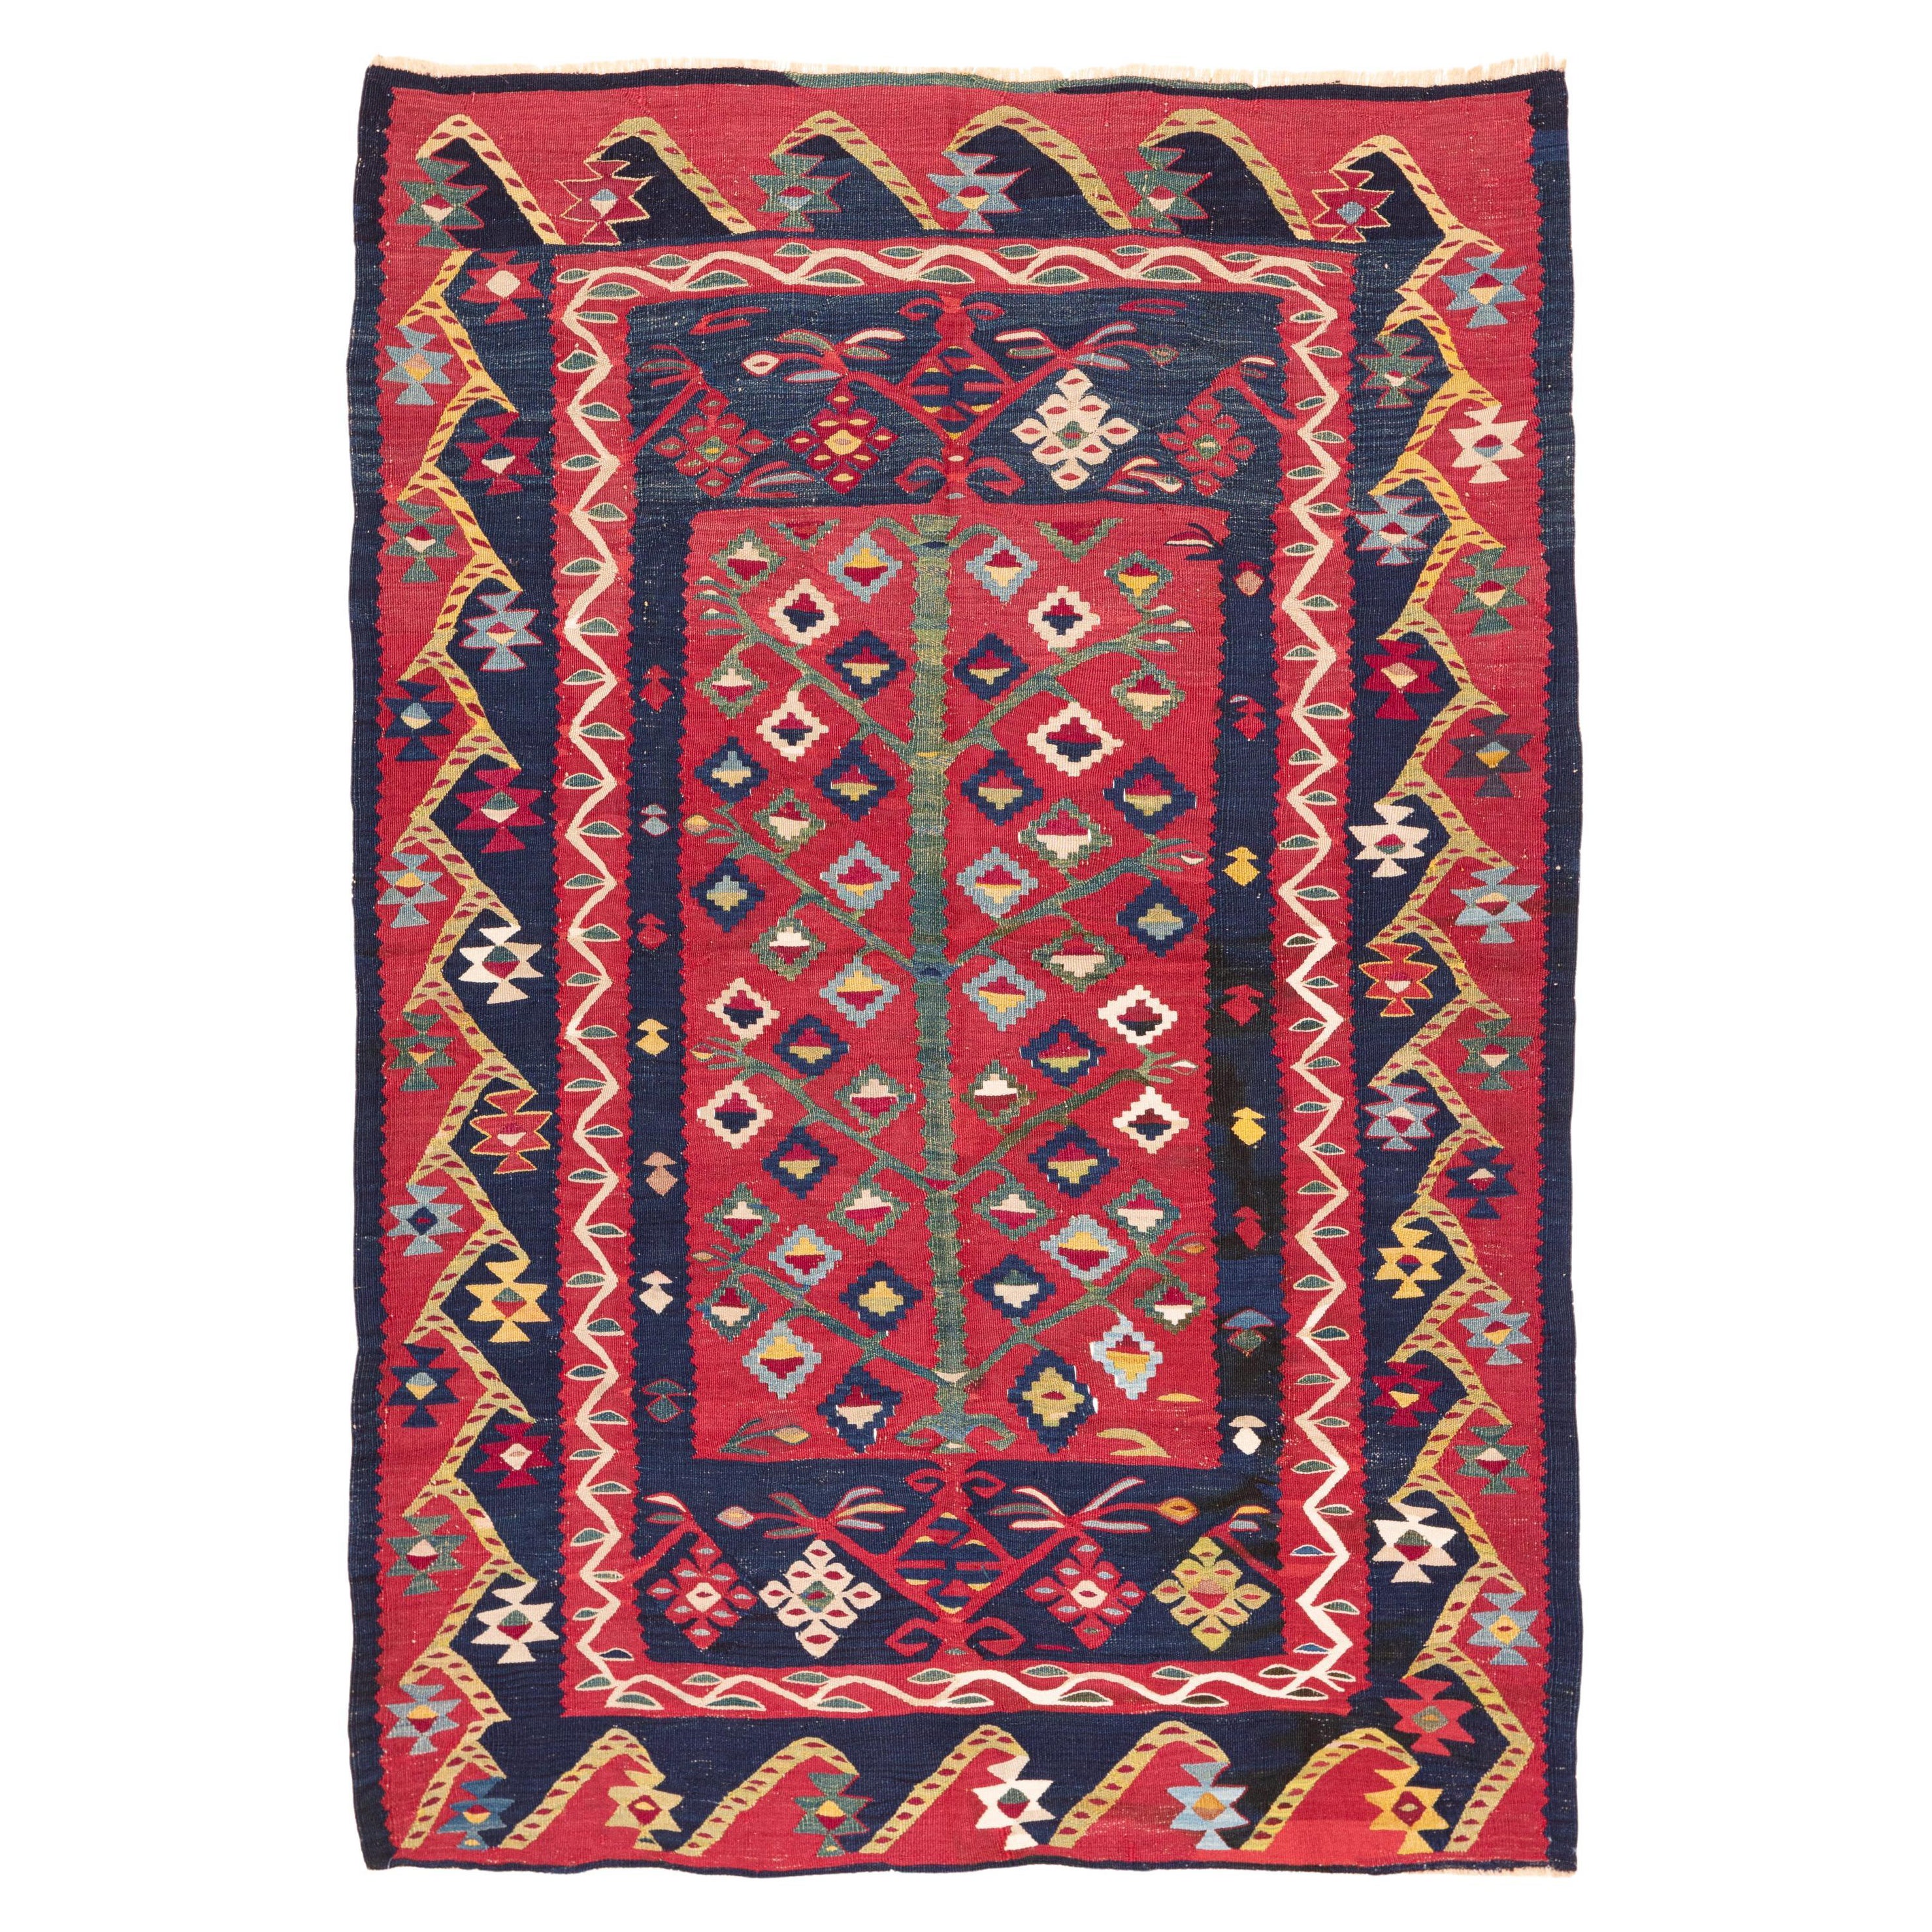 Coussin coussin Ikat 100 % soie et teinture naturelle - Oreiller moderne ouzbek 